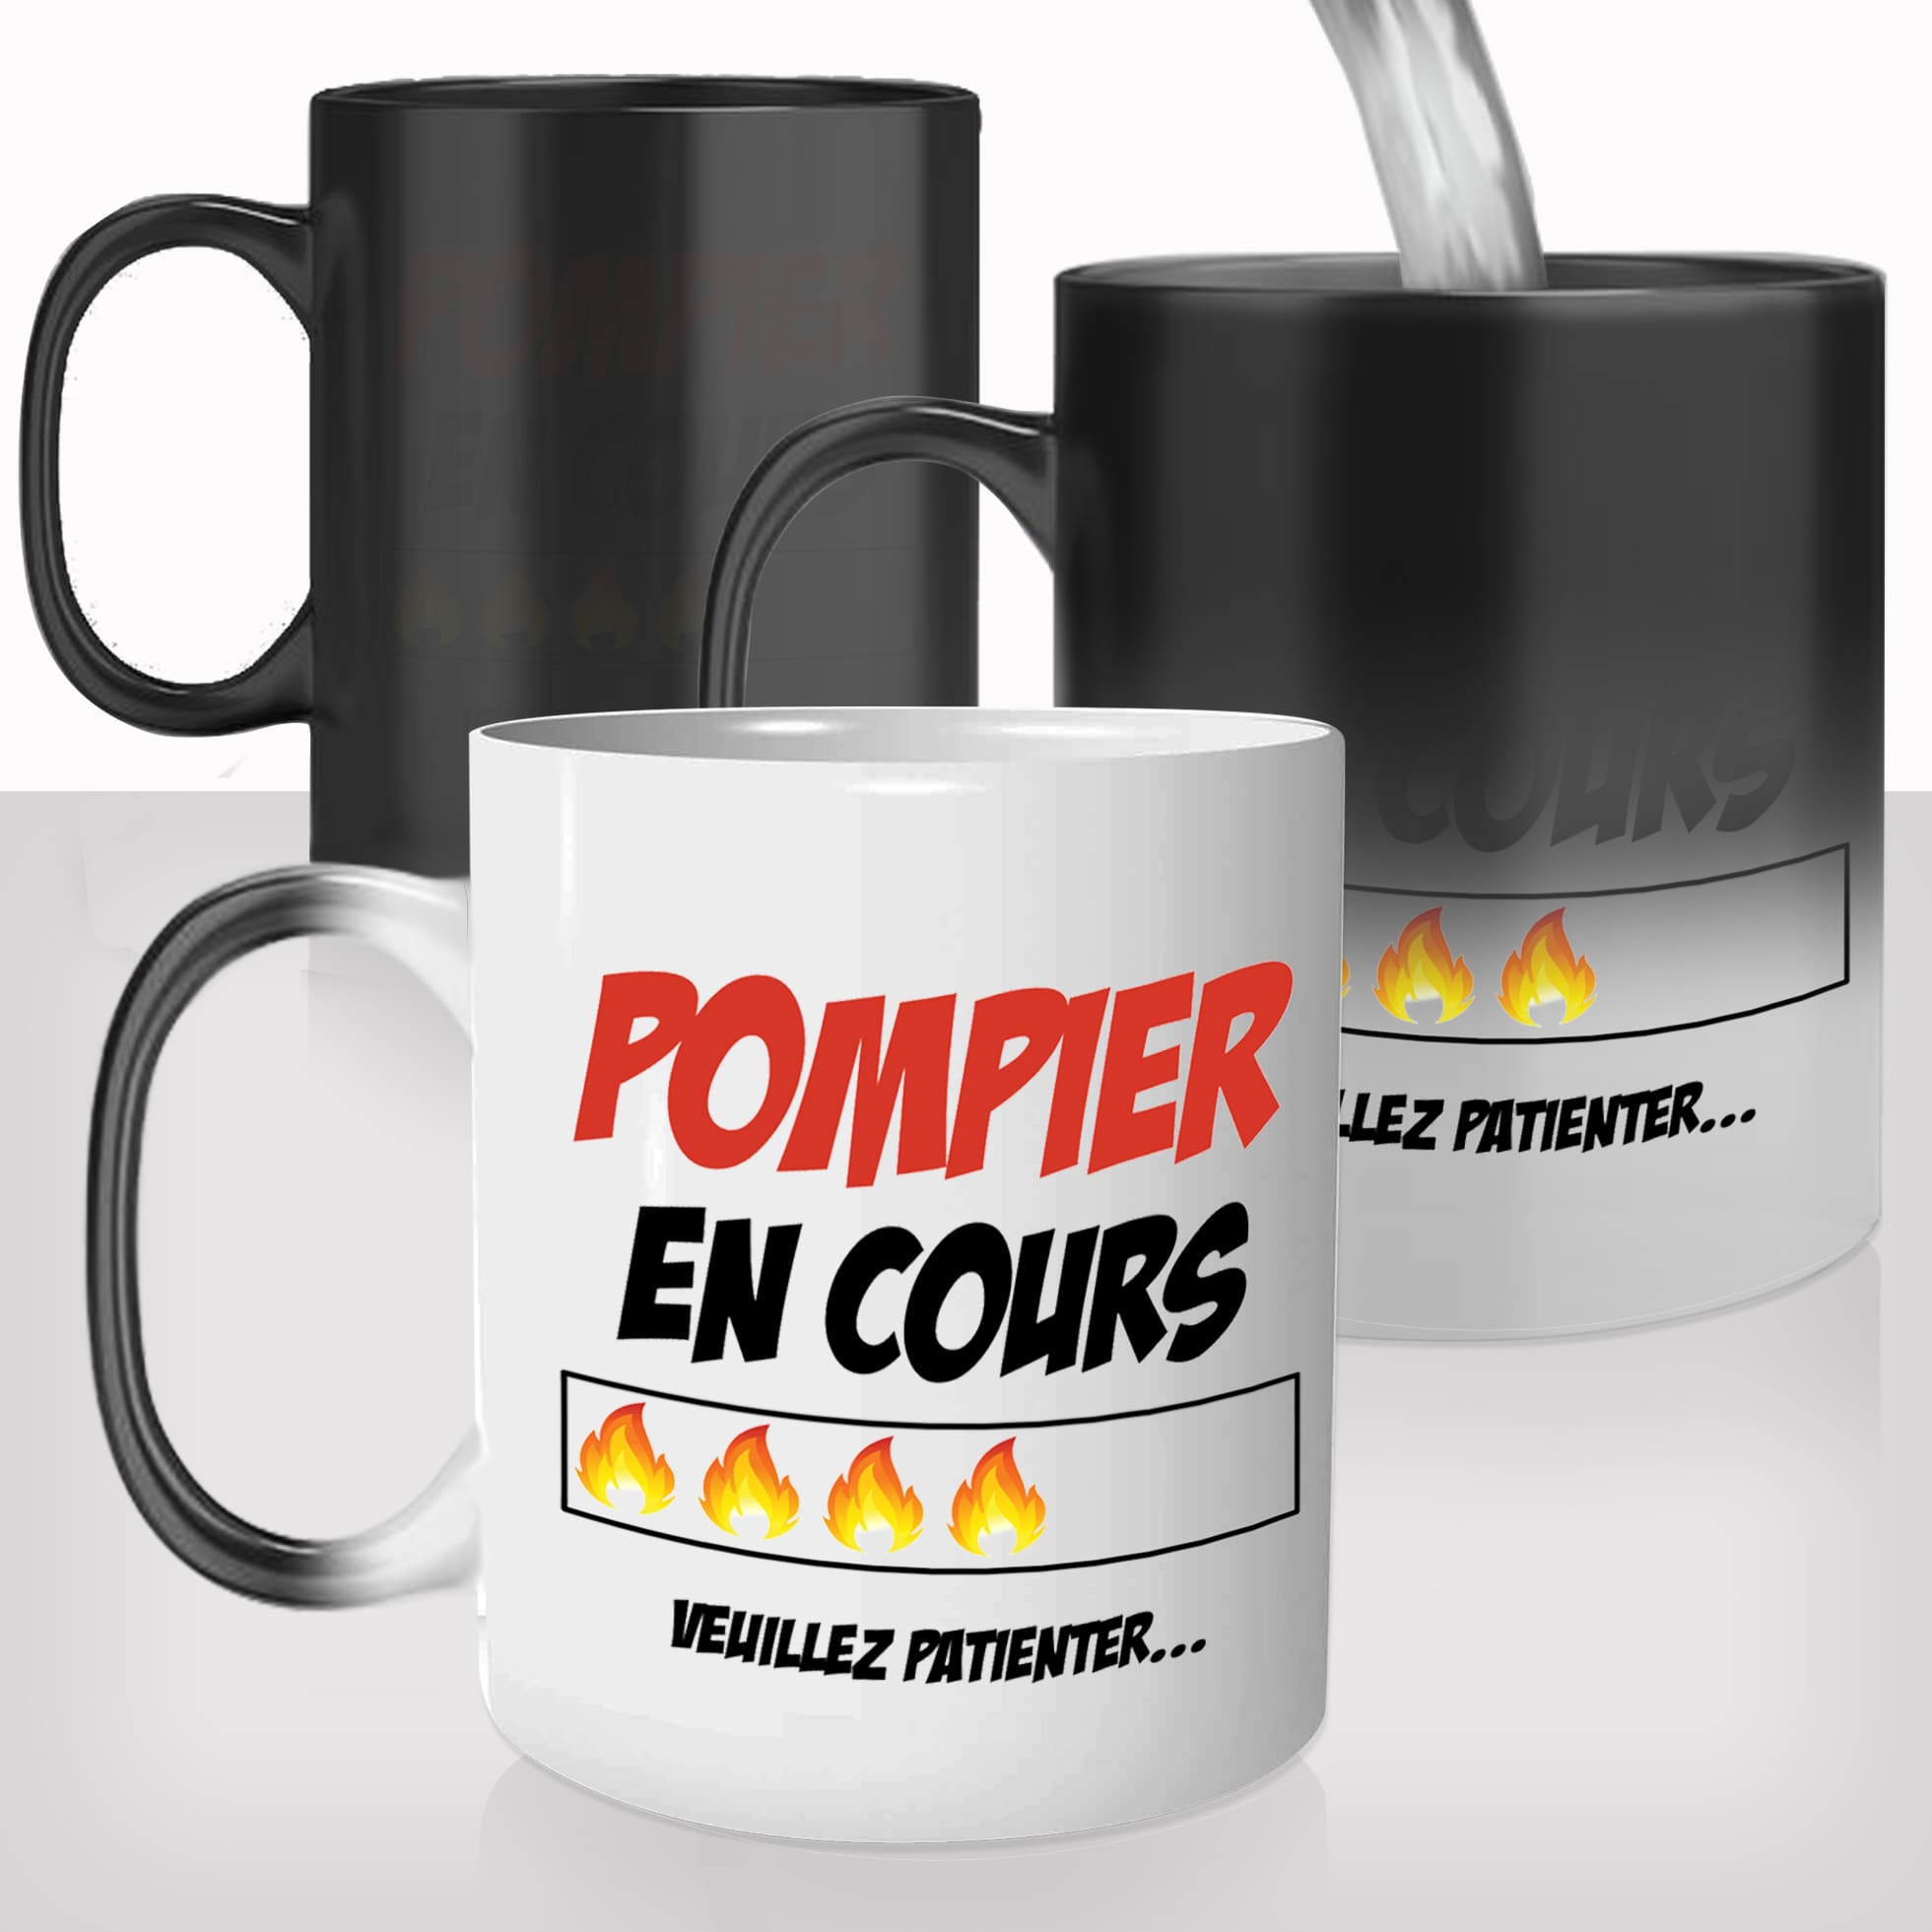 mug-magique-tasse-magic-thermo-reactif-chauffant-metier-pompier-en-cours-formation-flammes-volontaire-homme-fun-cadeau